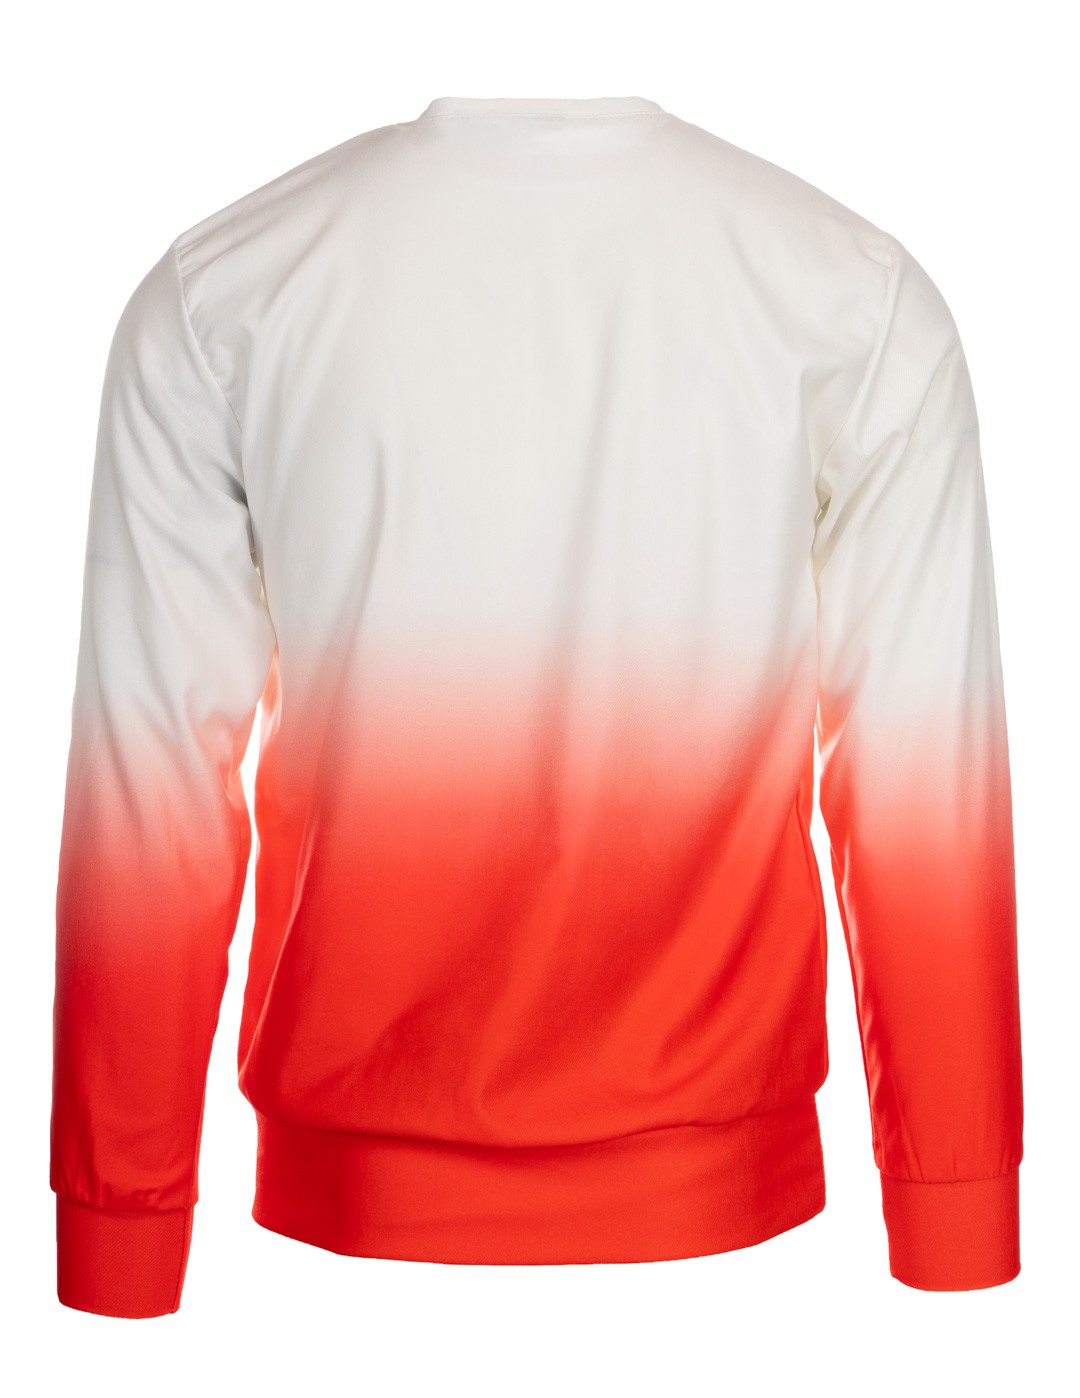 SHADOWS Sweatshirt Red/White